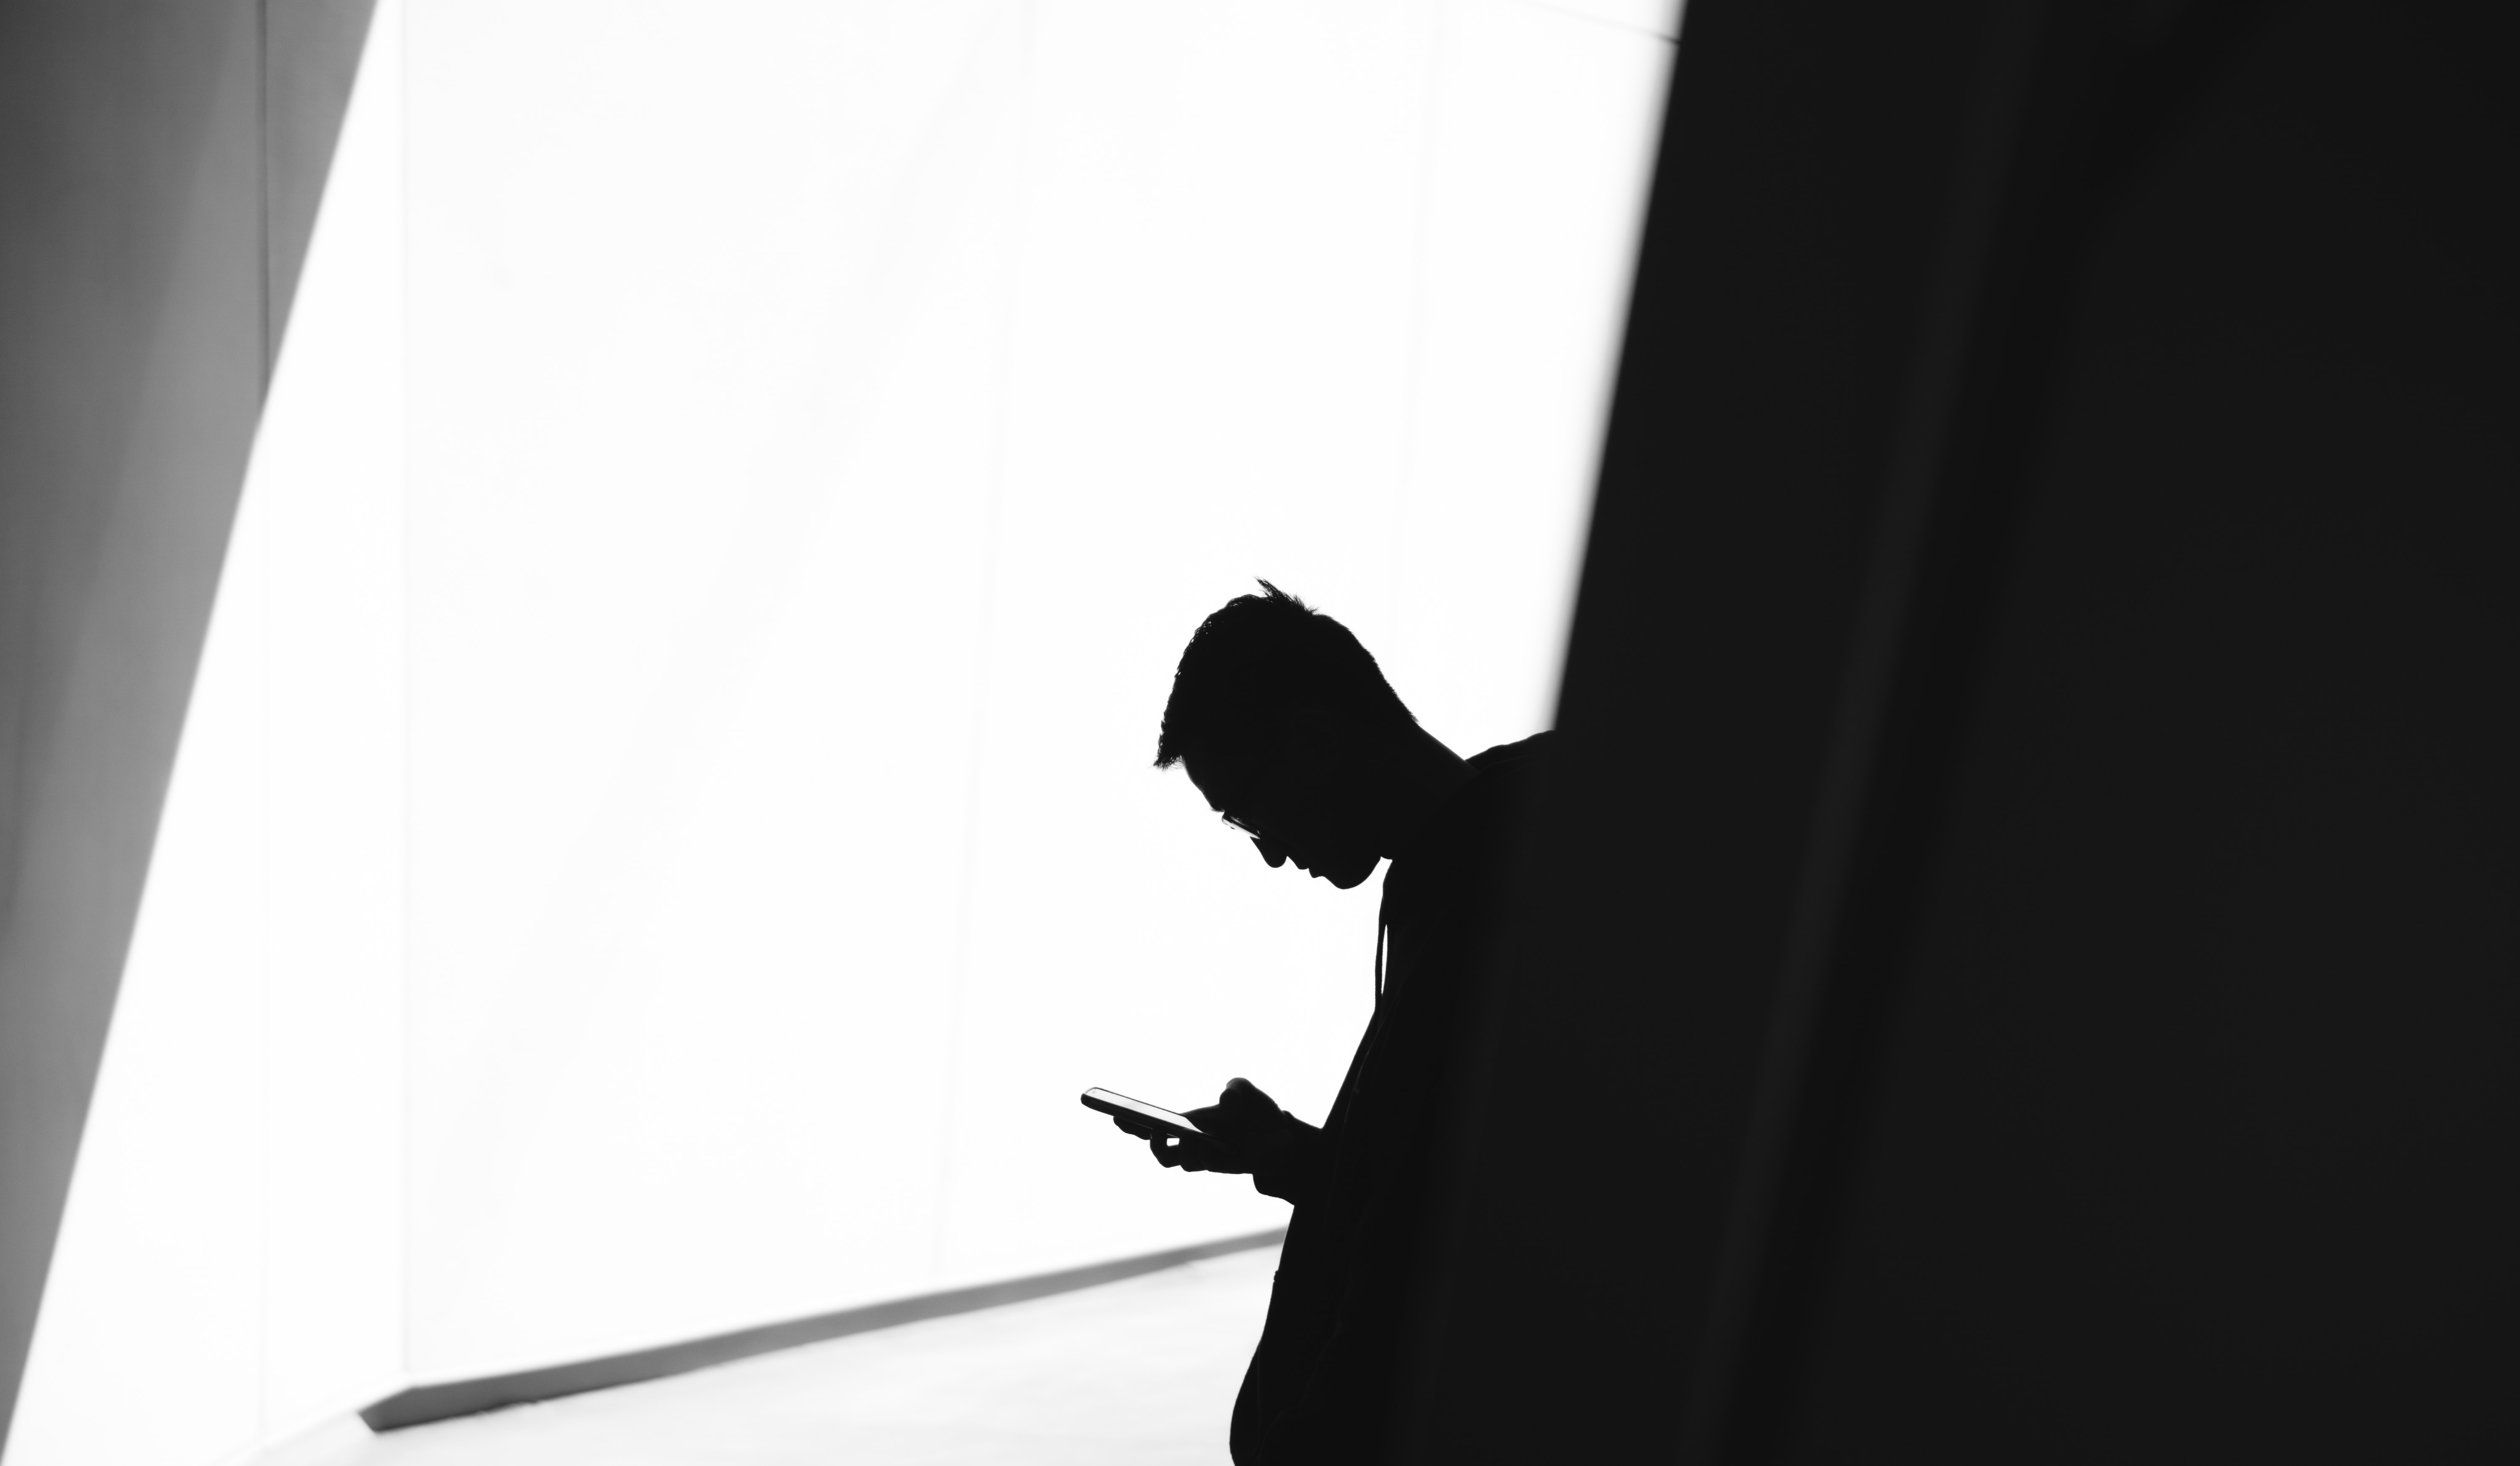 Mann überprüft sein Telefon, nachdem eine Benachrichtigung auf dem Bildschirm erscheint | Quelle: Unsplash